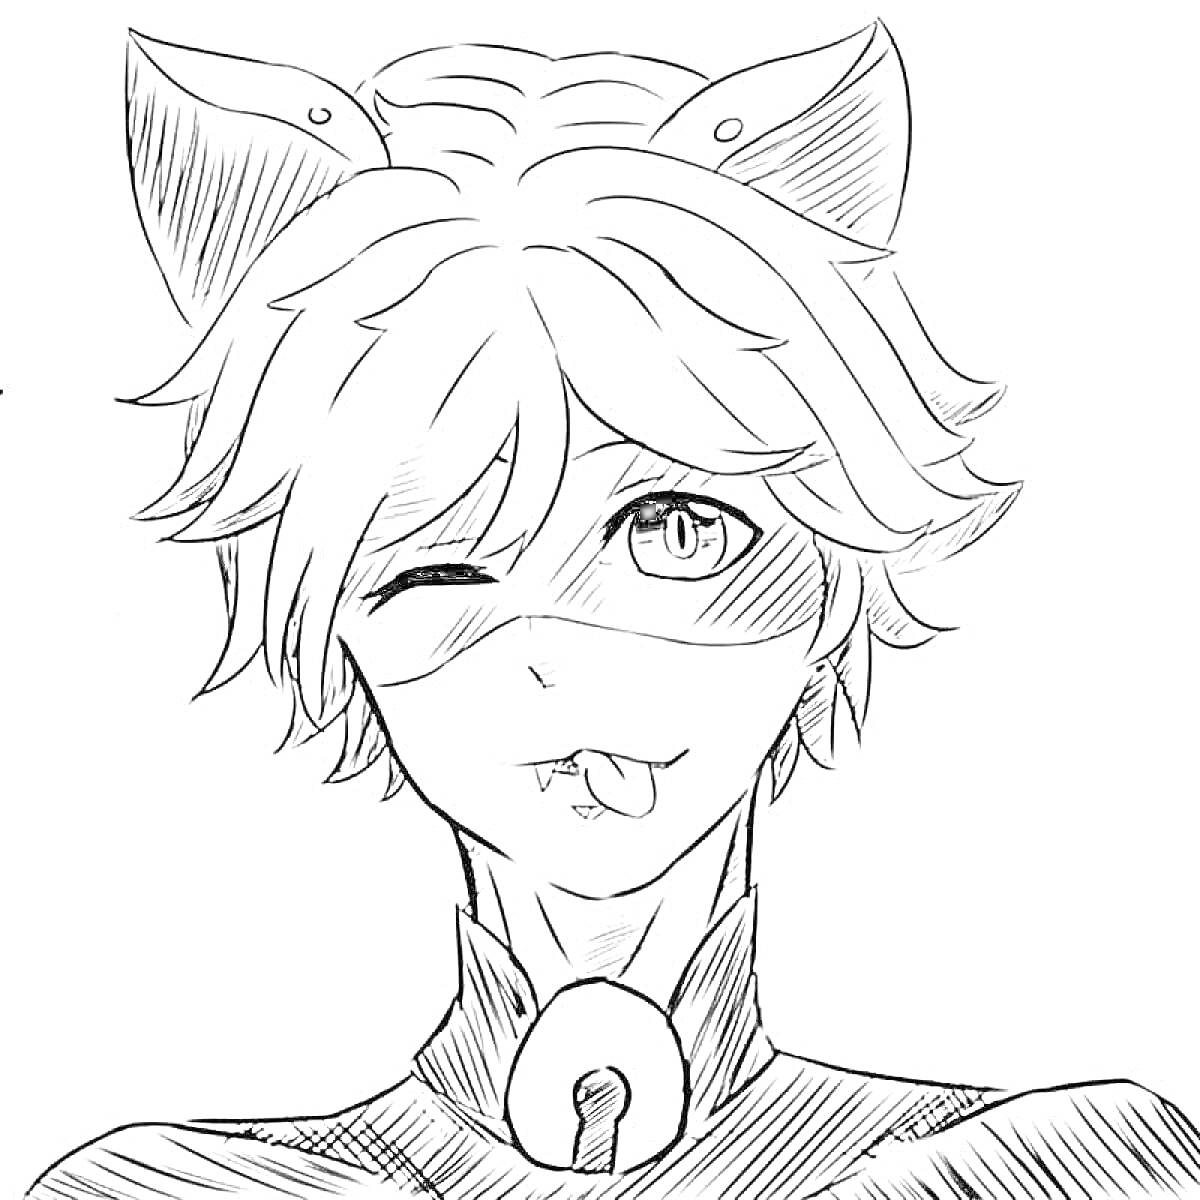 Раскраска Человек в маске с кошачьими ушами и ошейником, подмигивающий и показывающий язык